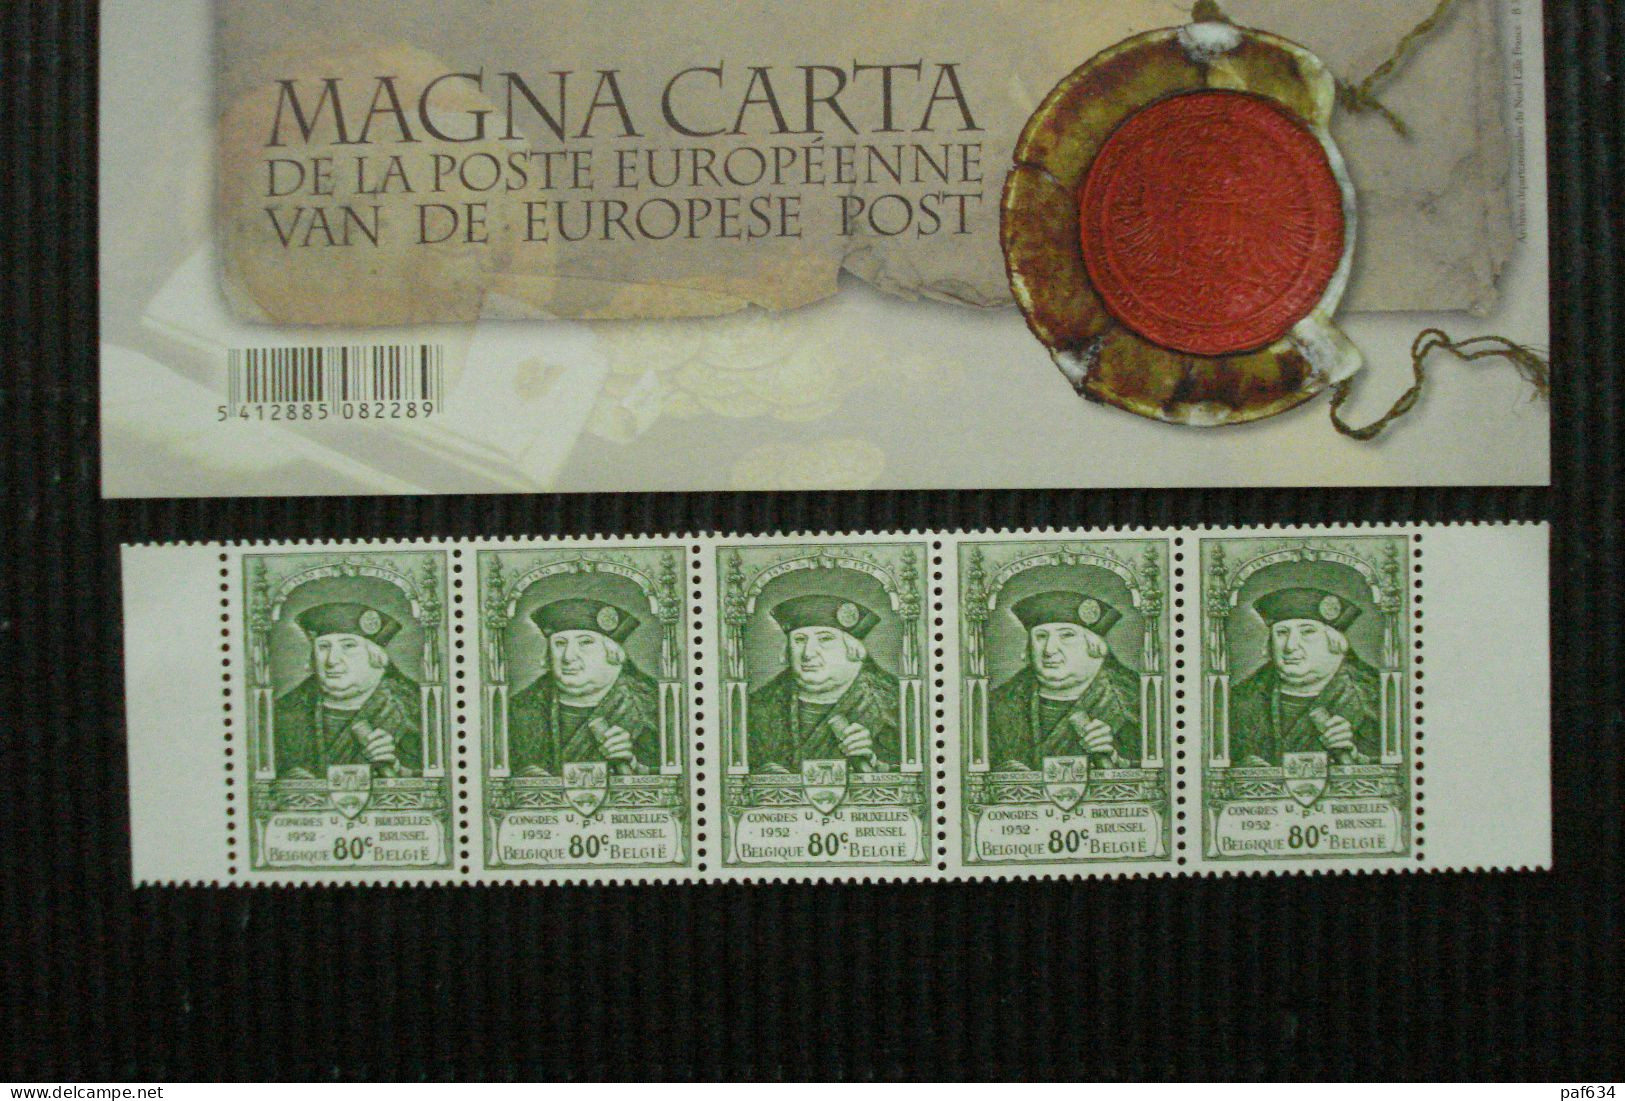 Postfrisse Zegelblok++MAGNA CARTA++met Postzegelstrook Zegels++880++ - Collections